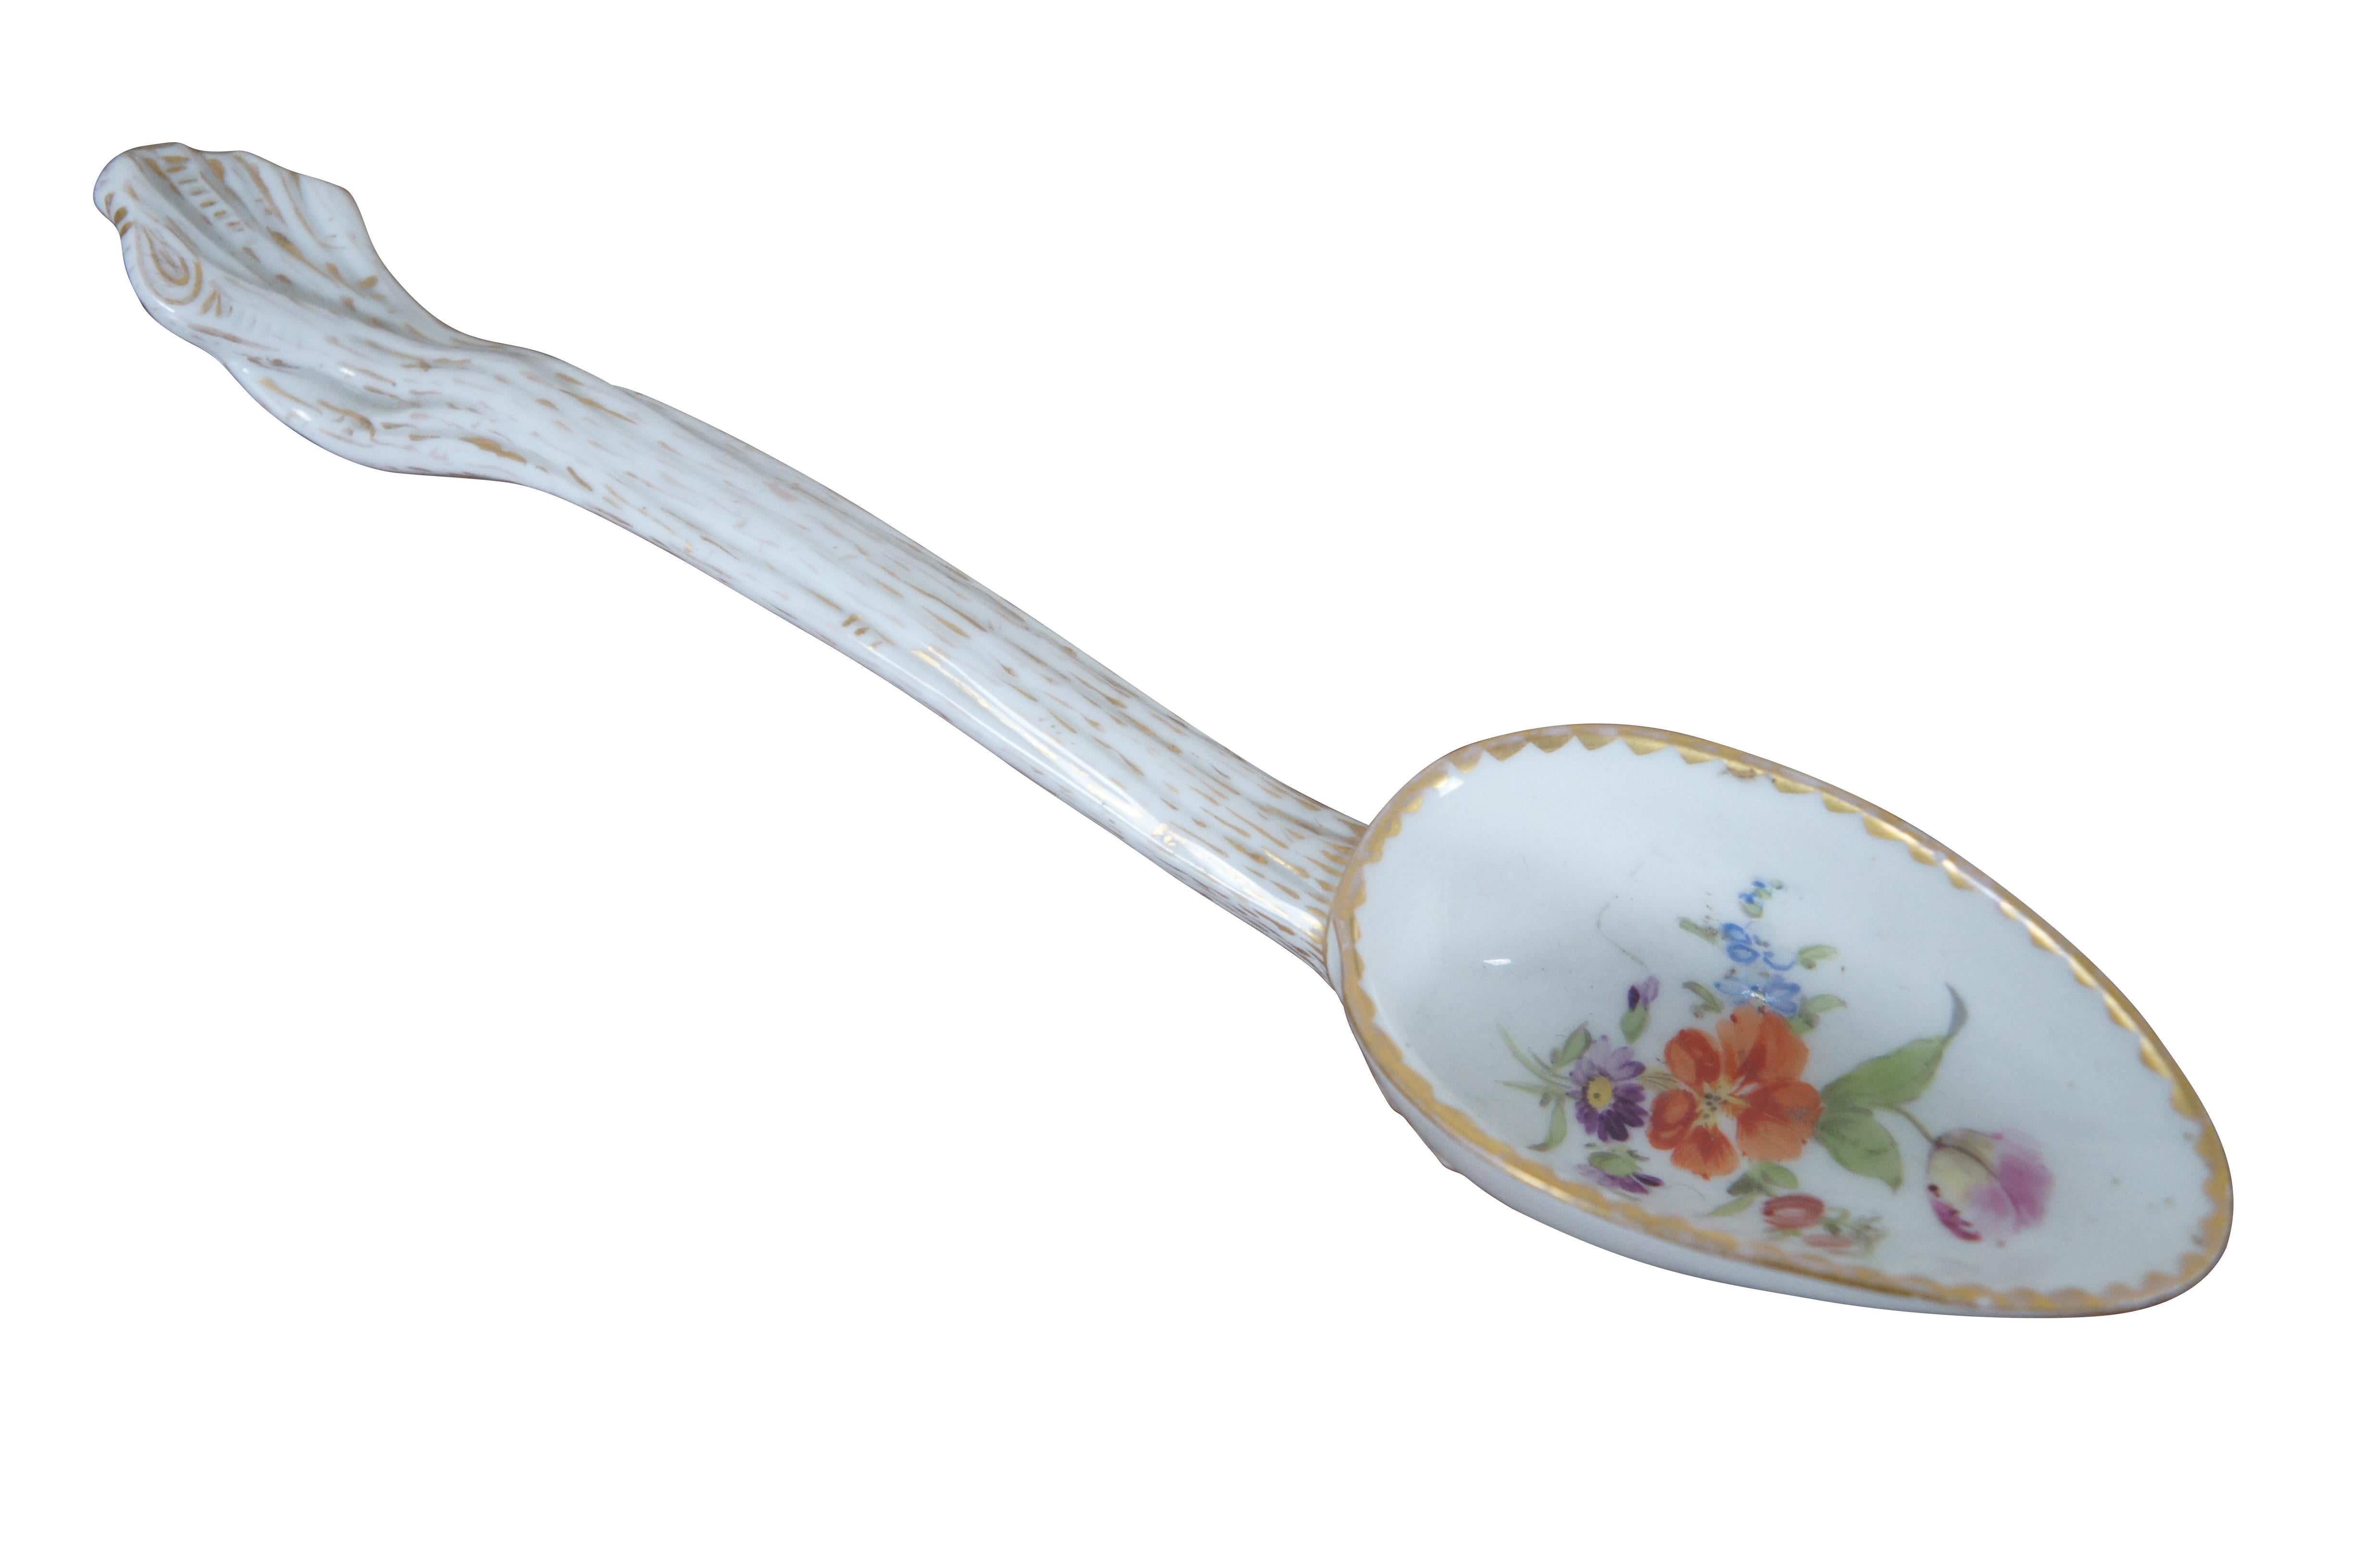 Antique German Meissen Dresden porcelain berry serving spoon featuring floral motif.

DIMENSIONS

8.5